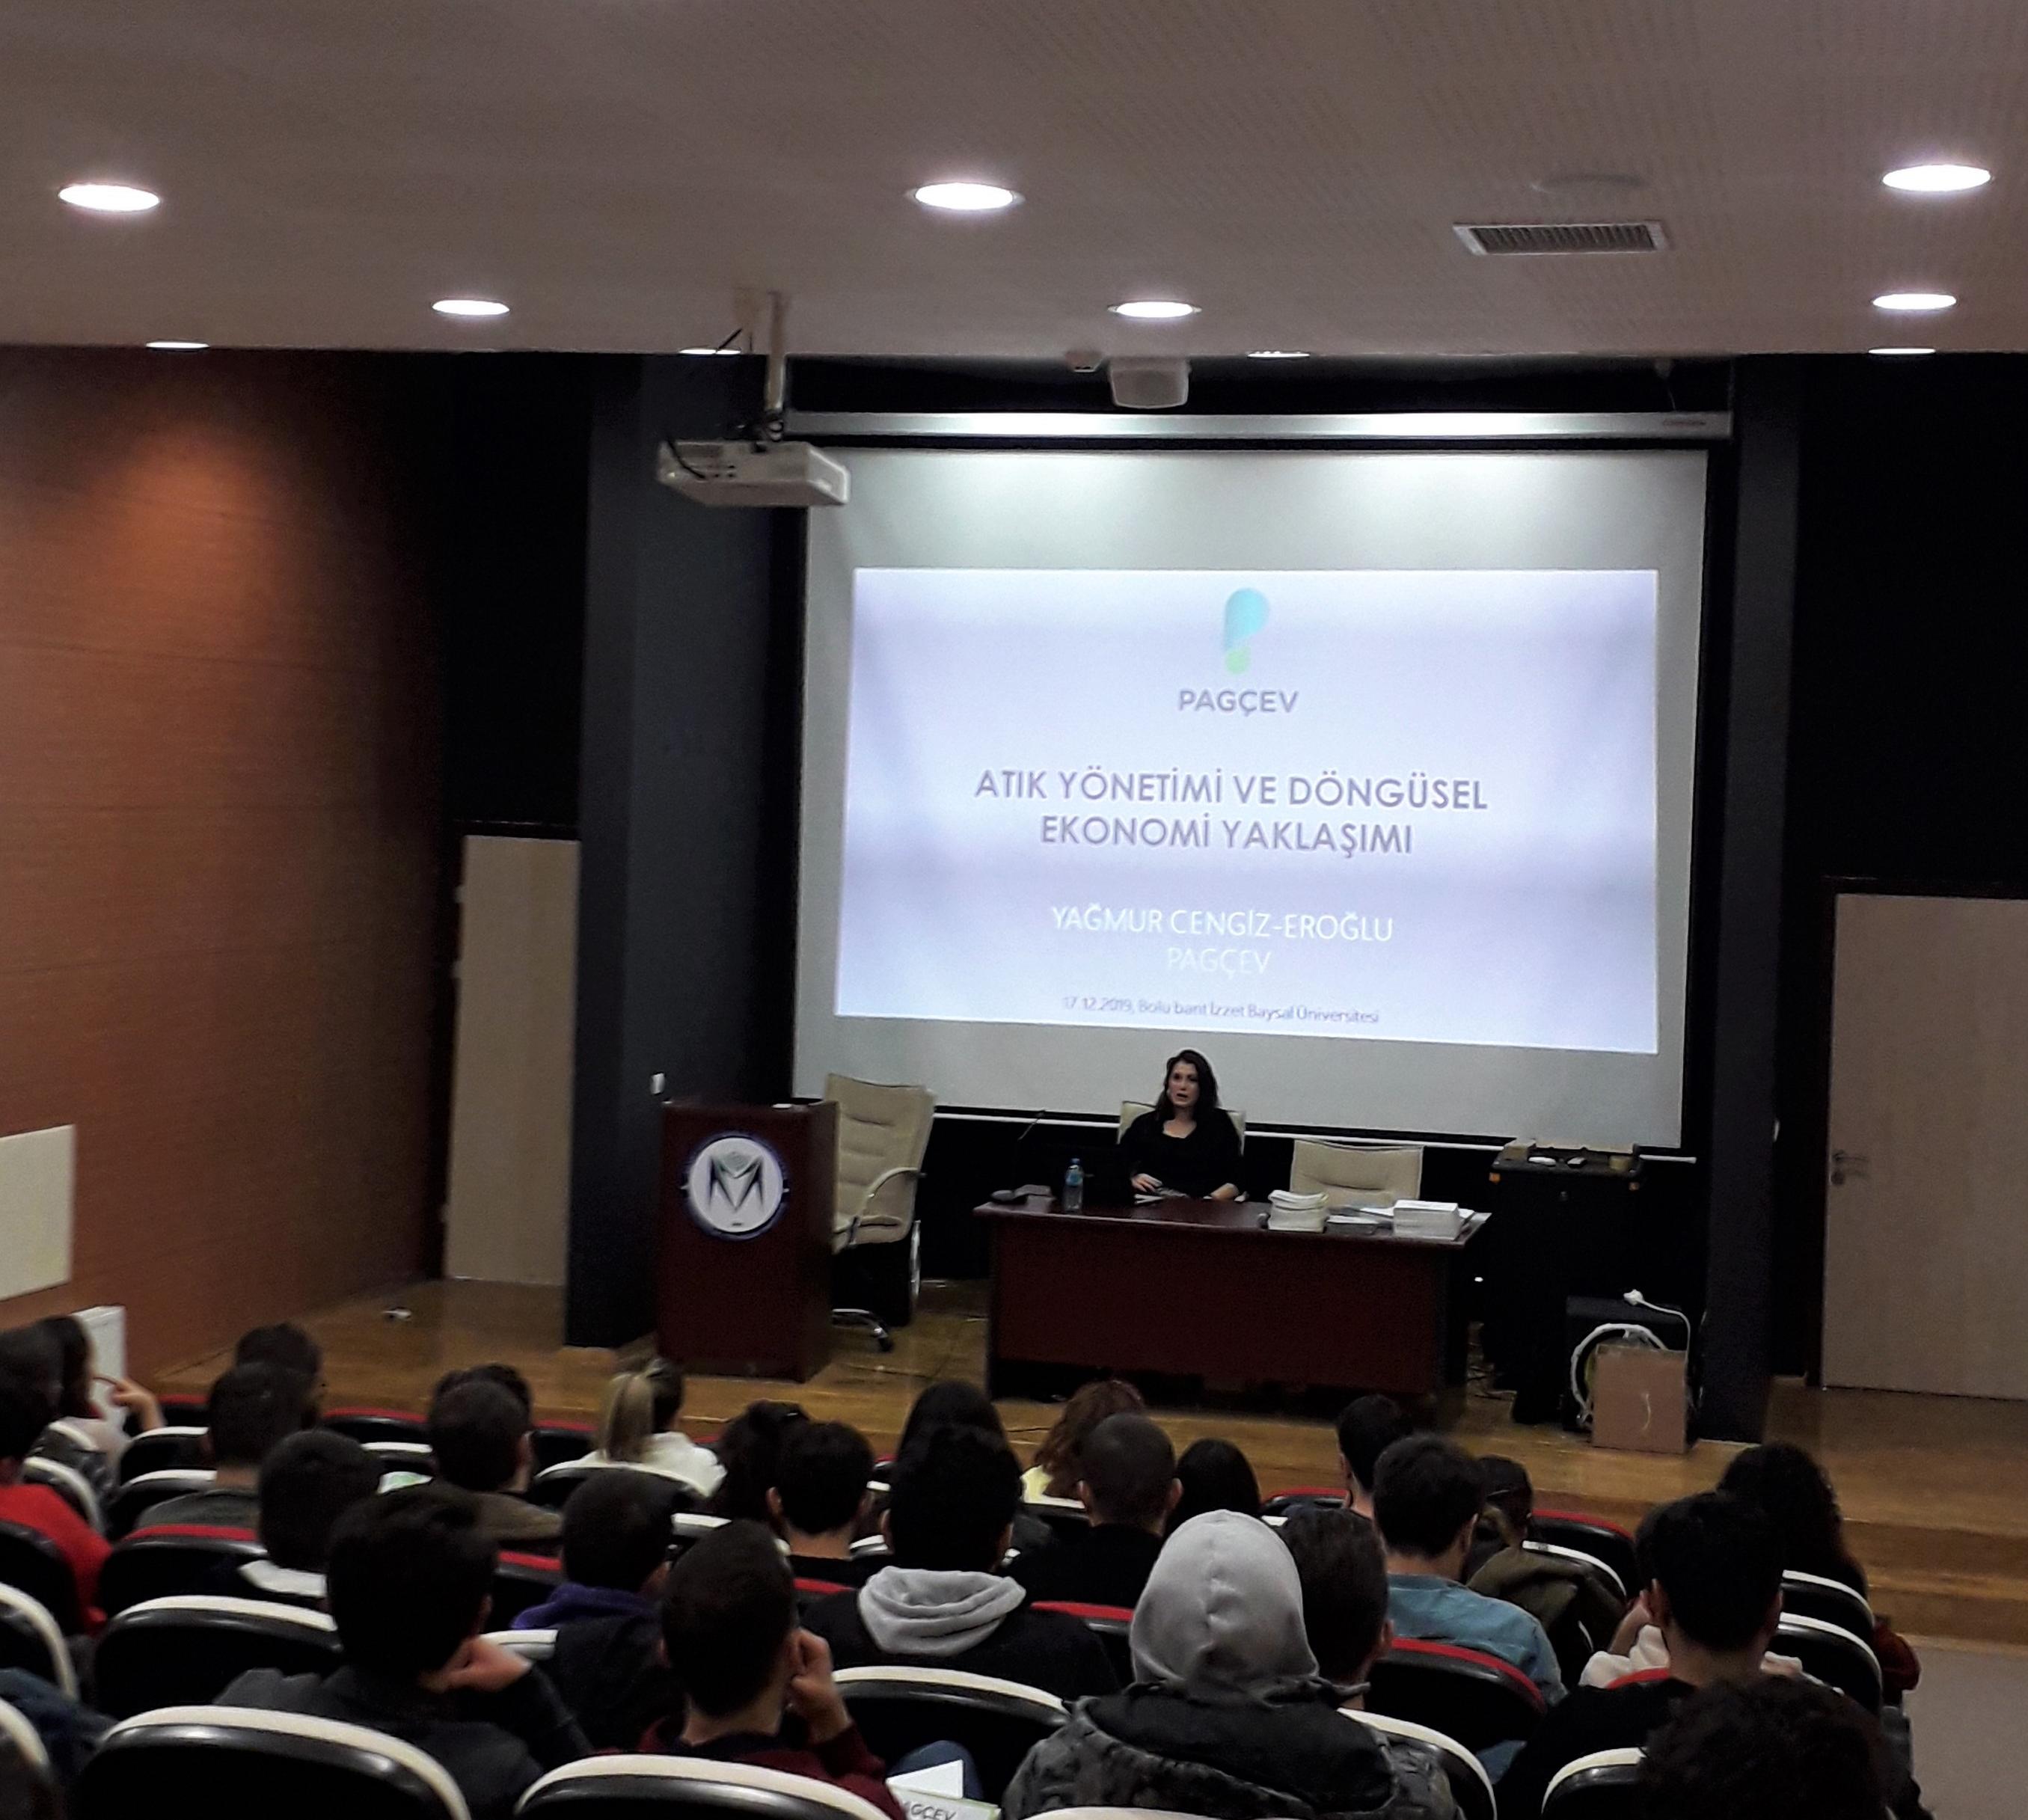 Abant İzzet Baysal Üniversitesi Çevre Mühendisliği Bölümü Öğrencileri ile Bir Araya Geldik